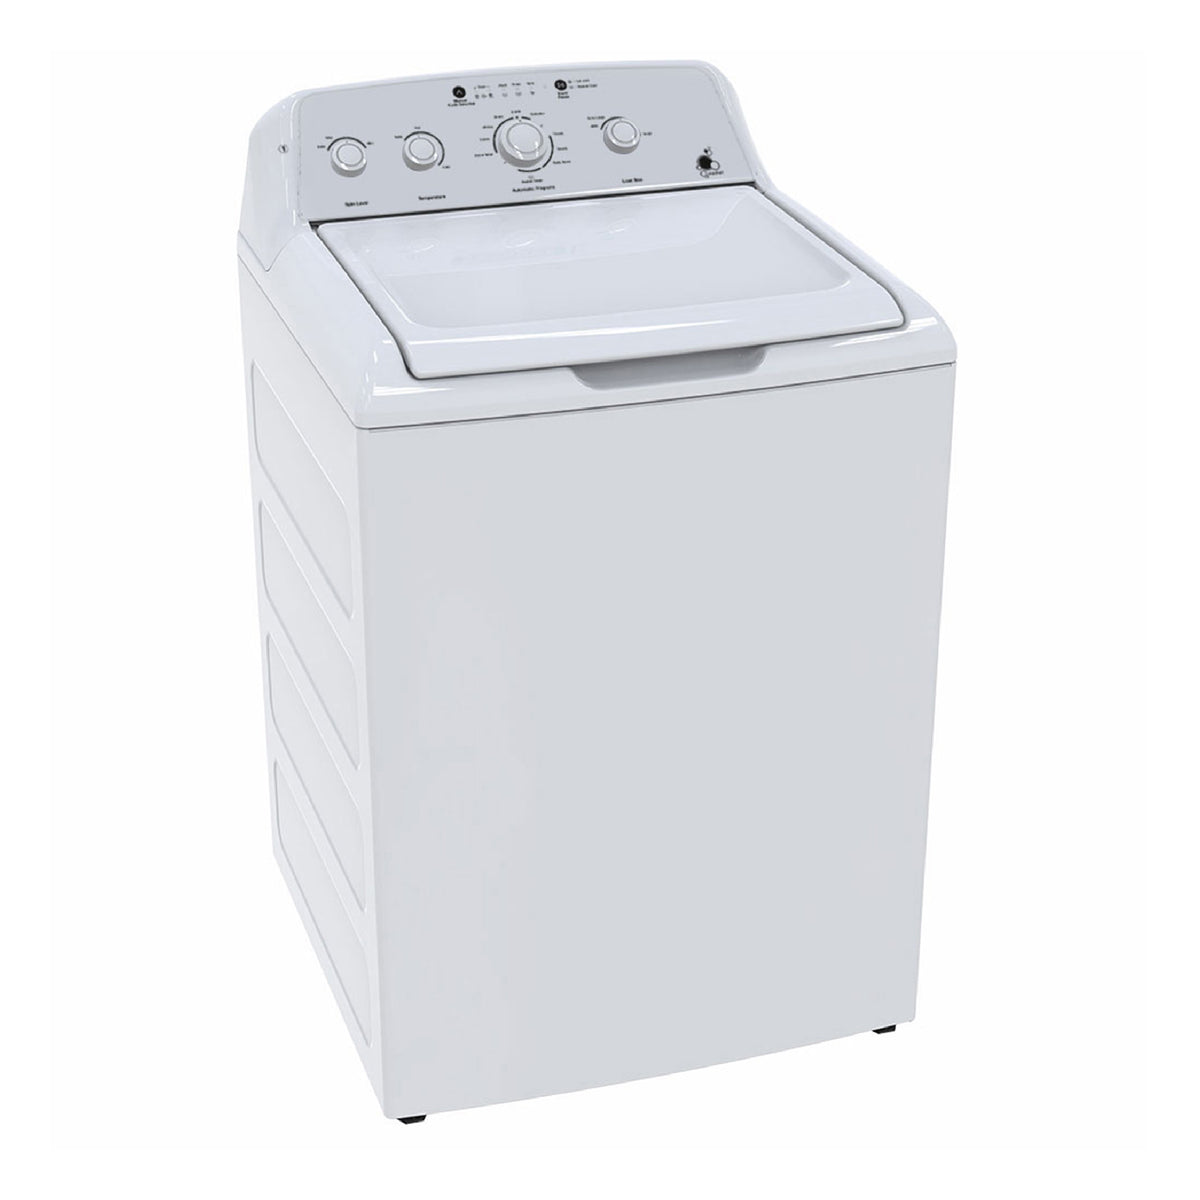 Frigidaire Top Load Washer 17KG | Washing Machine | Best Washer in Bahrain Halabh.com